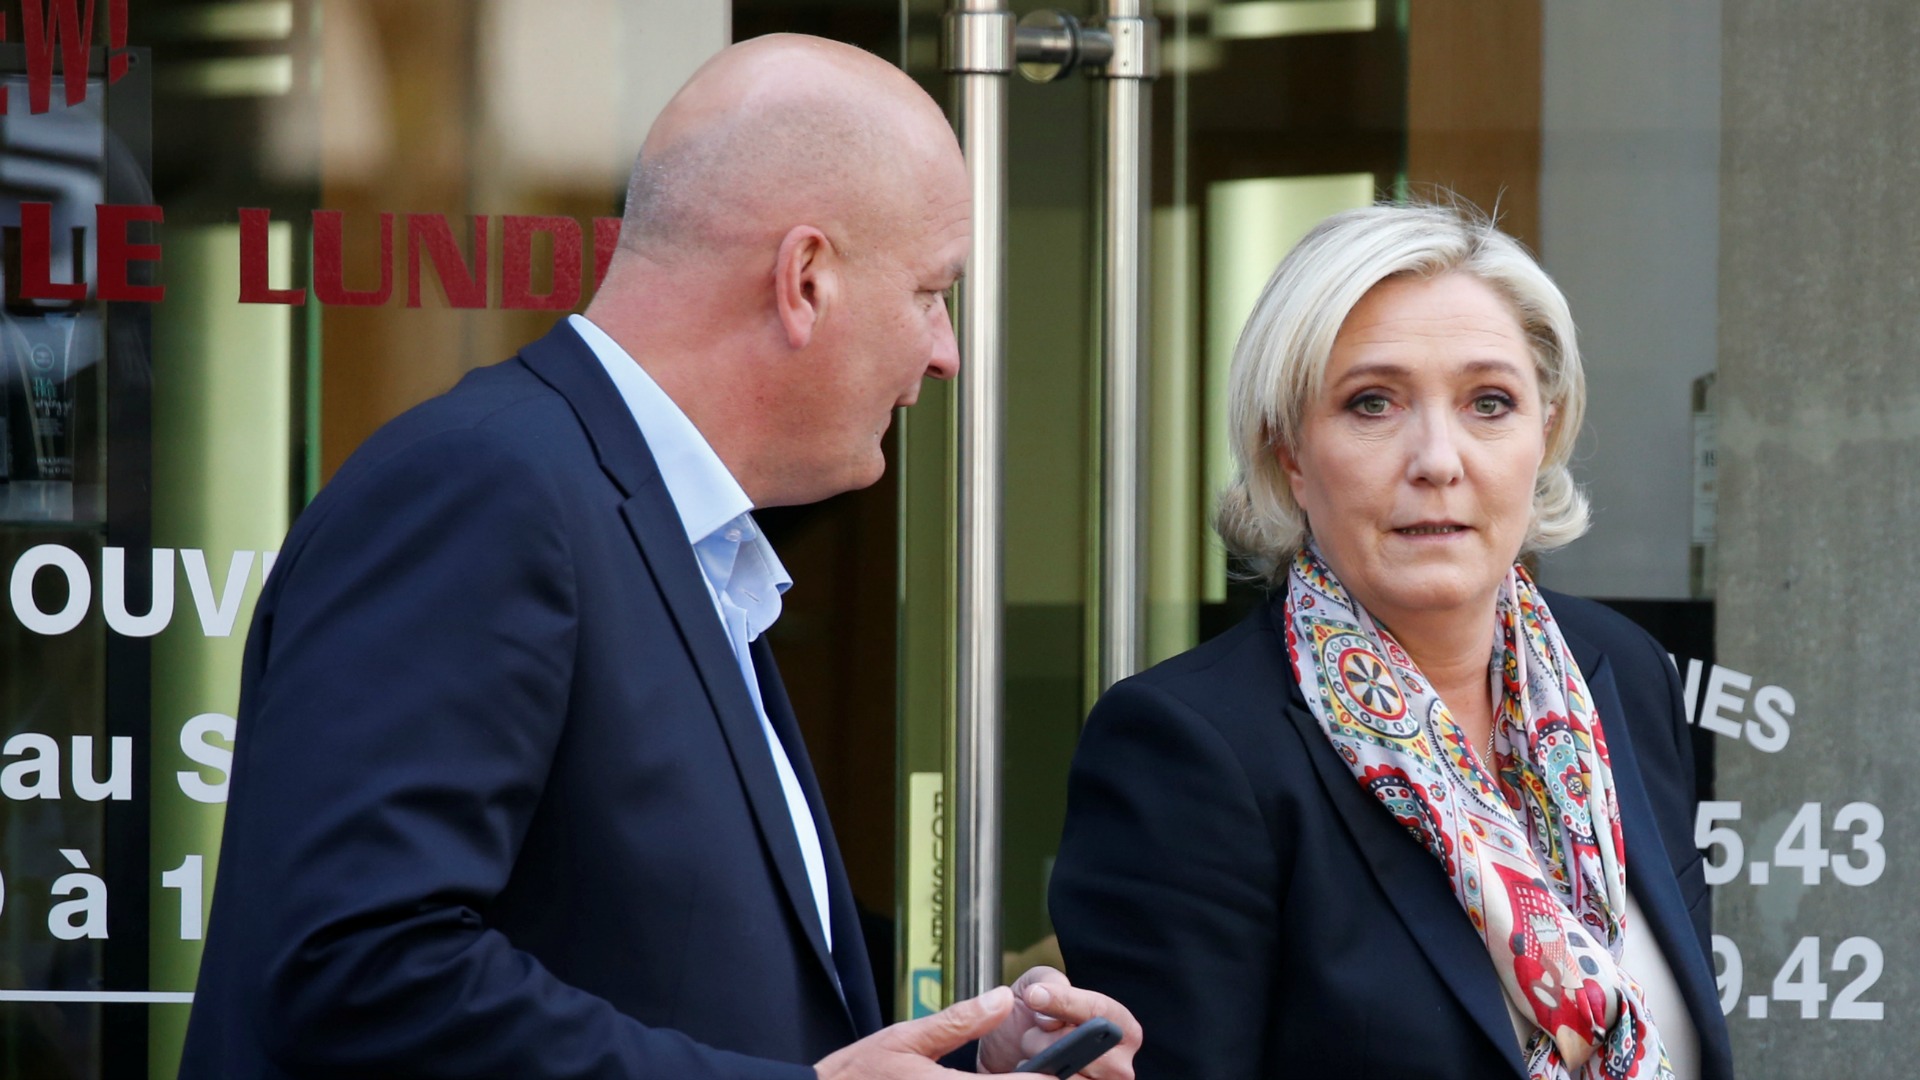 Le Pen abandona la presidencia del Frente Nacional